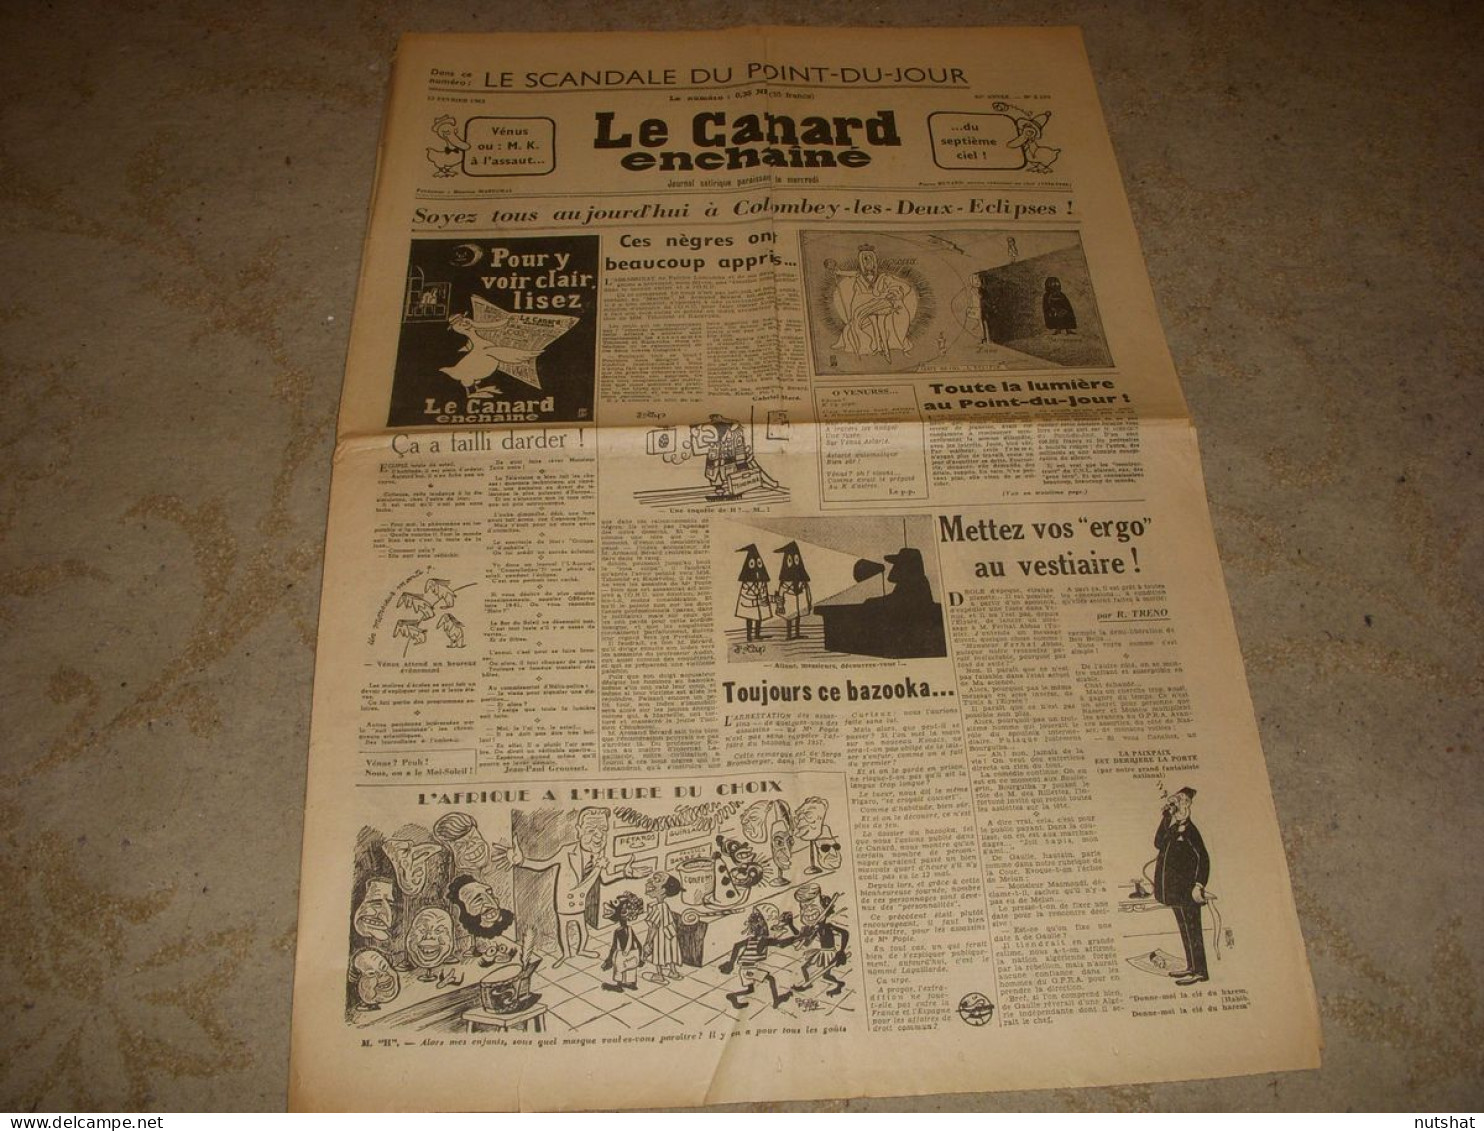 CANARD ENCHAINE 2104 15.02.1961 MARCILLAC Jean ROUSSELOT ROSES ROUGES POUR MOI - Politica